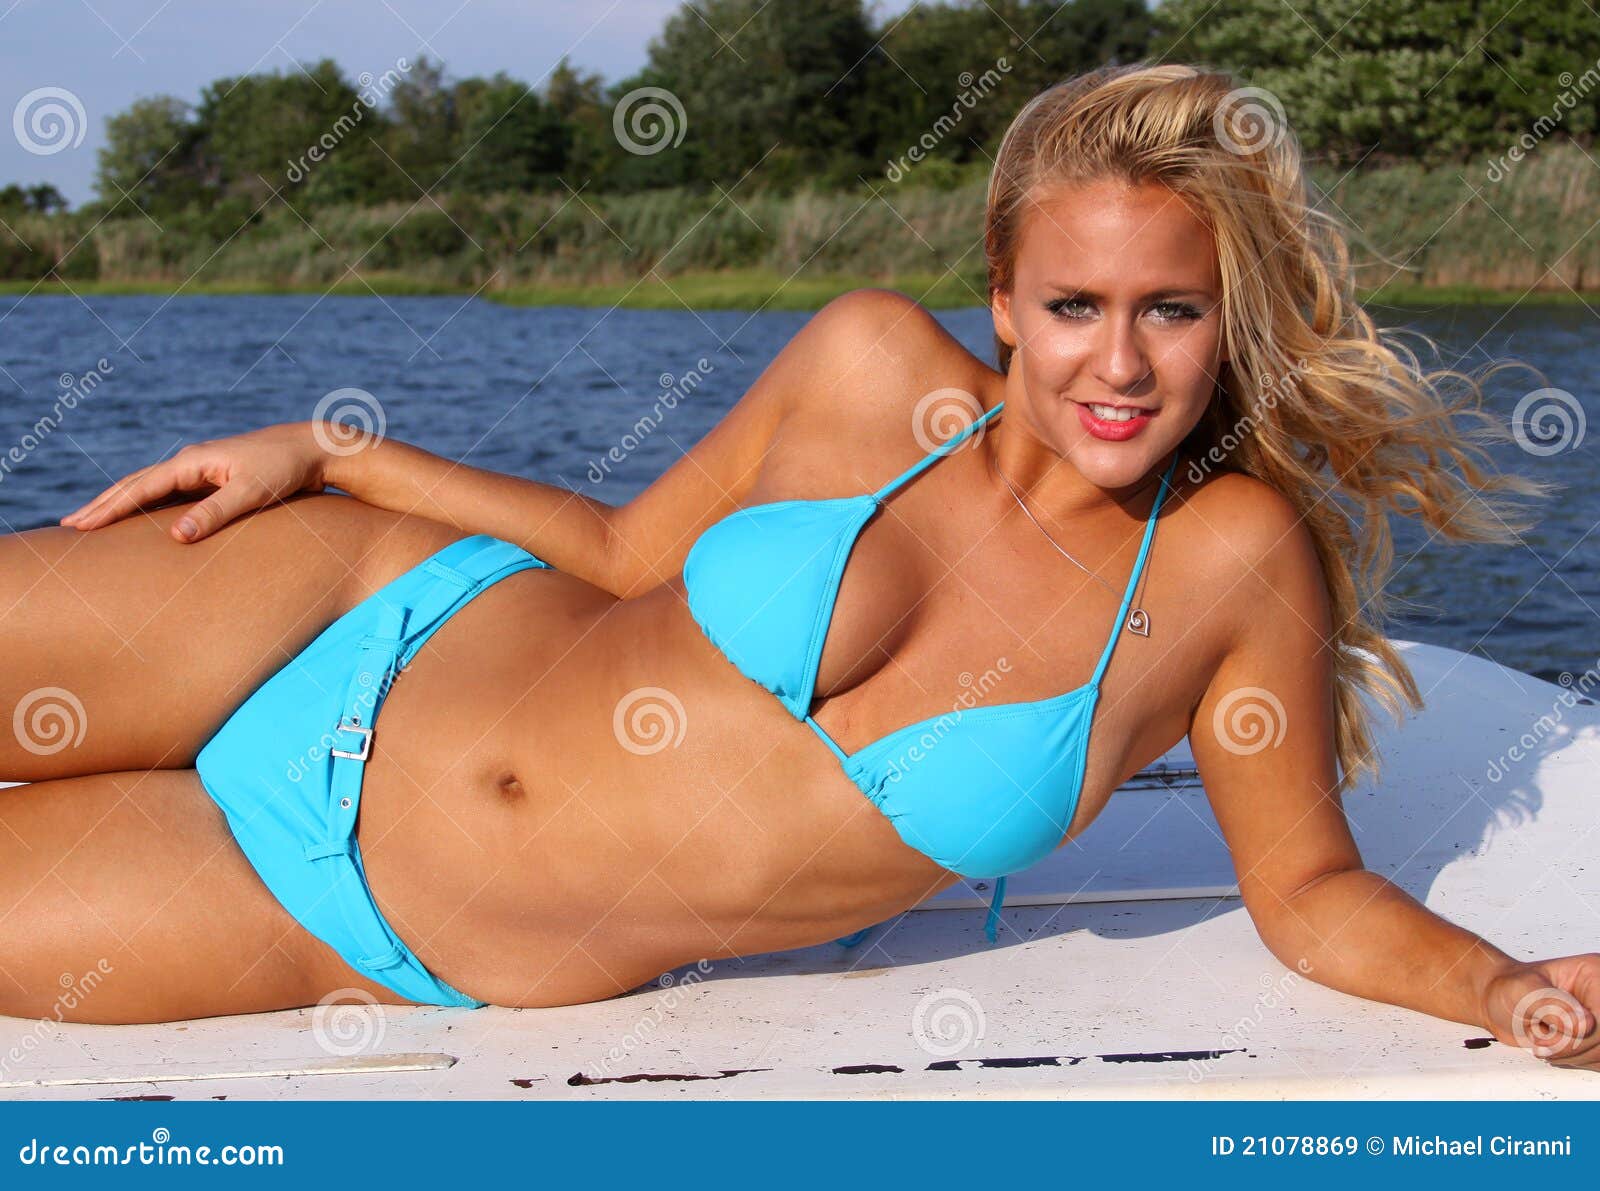 Girl in blue bikini stock photo. Image of tanned, beautiful - 11097392